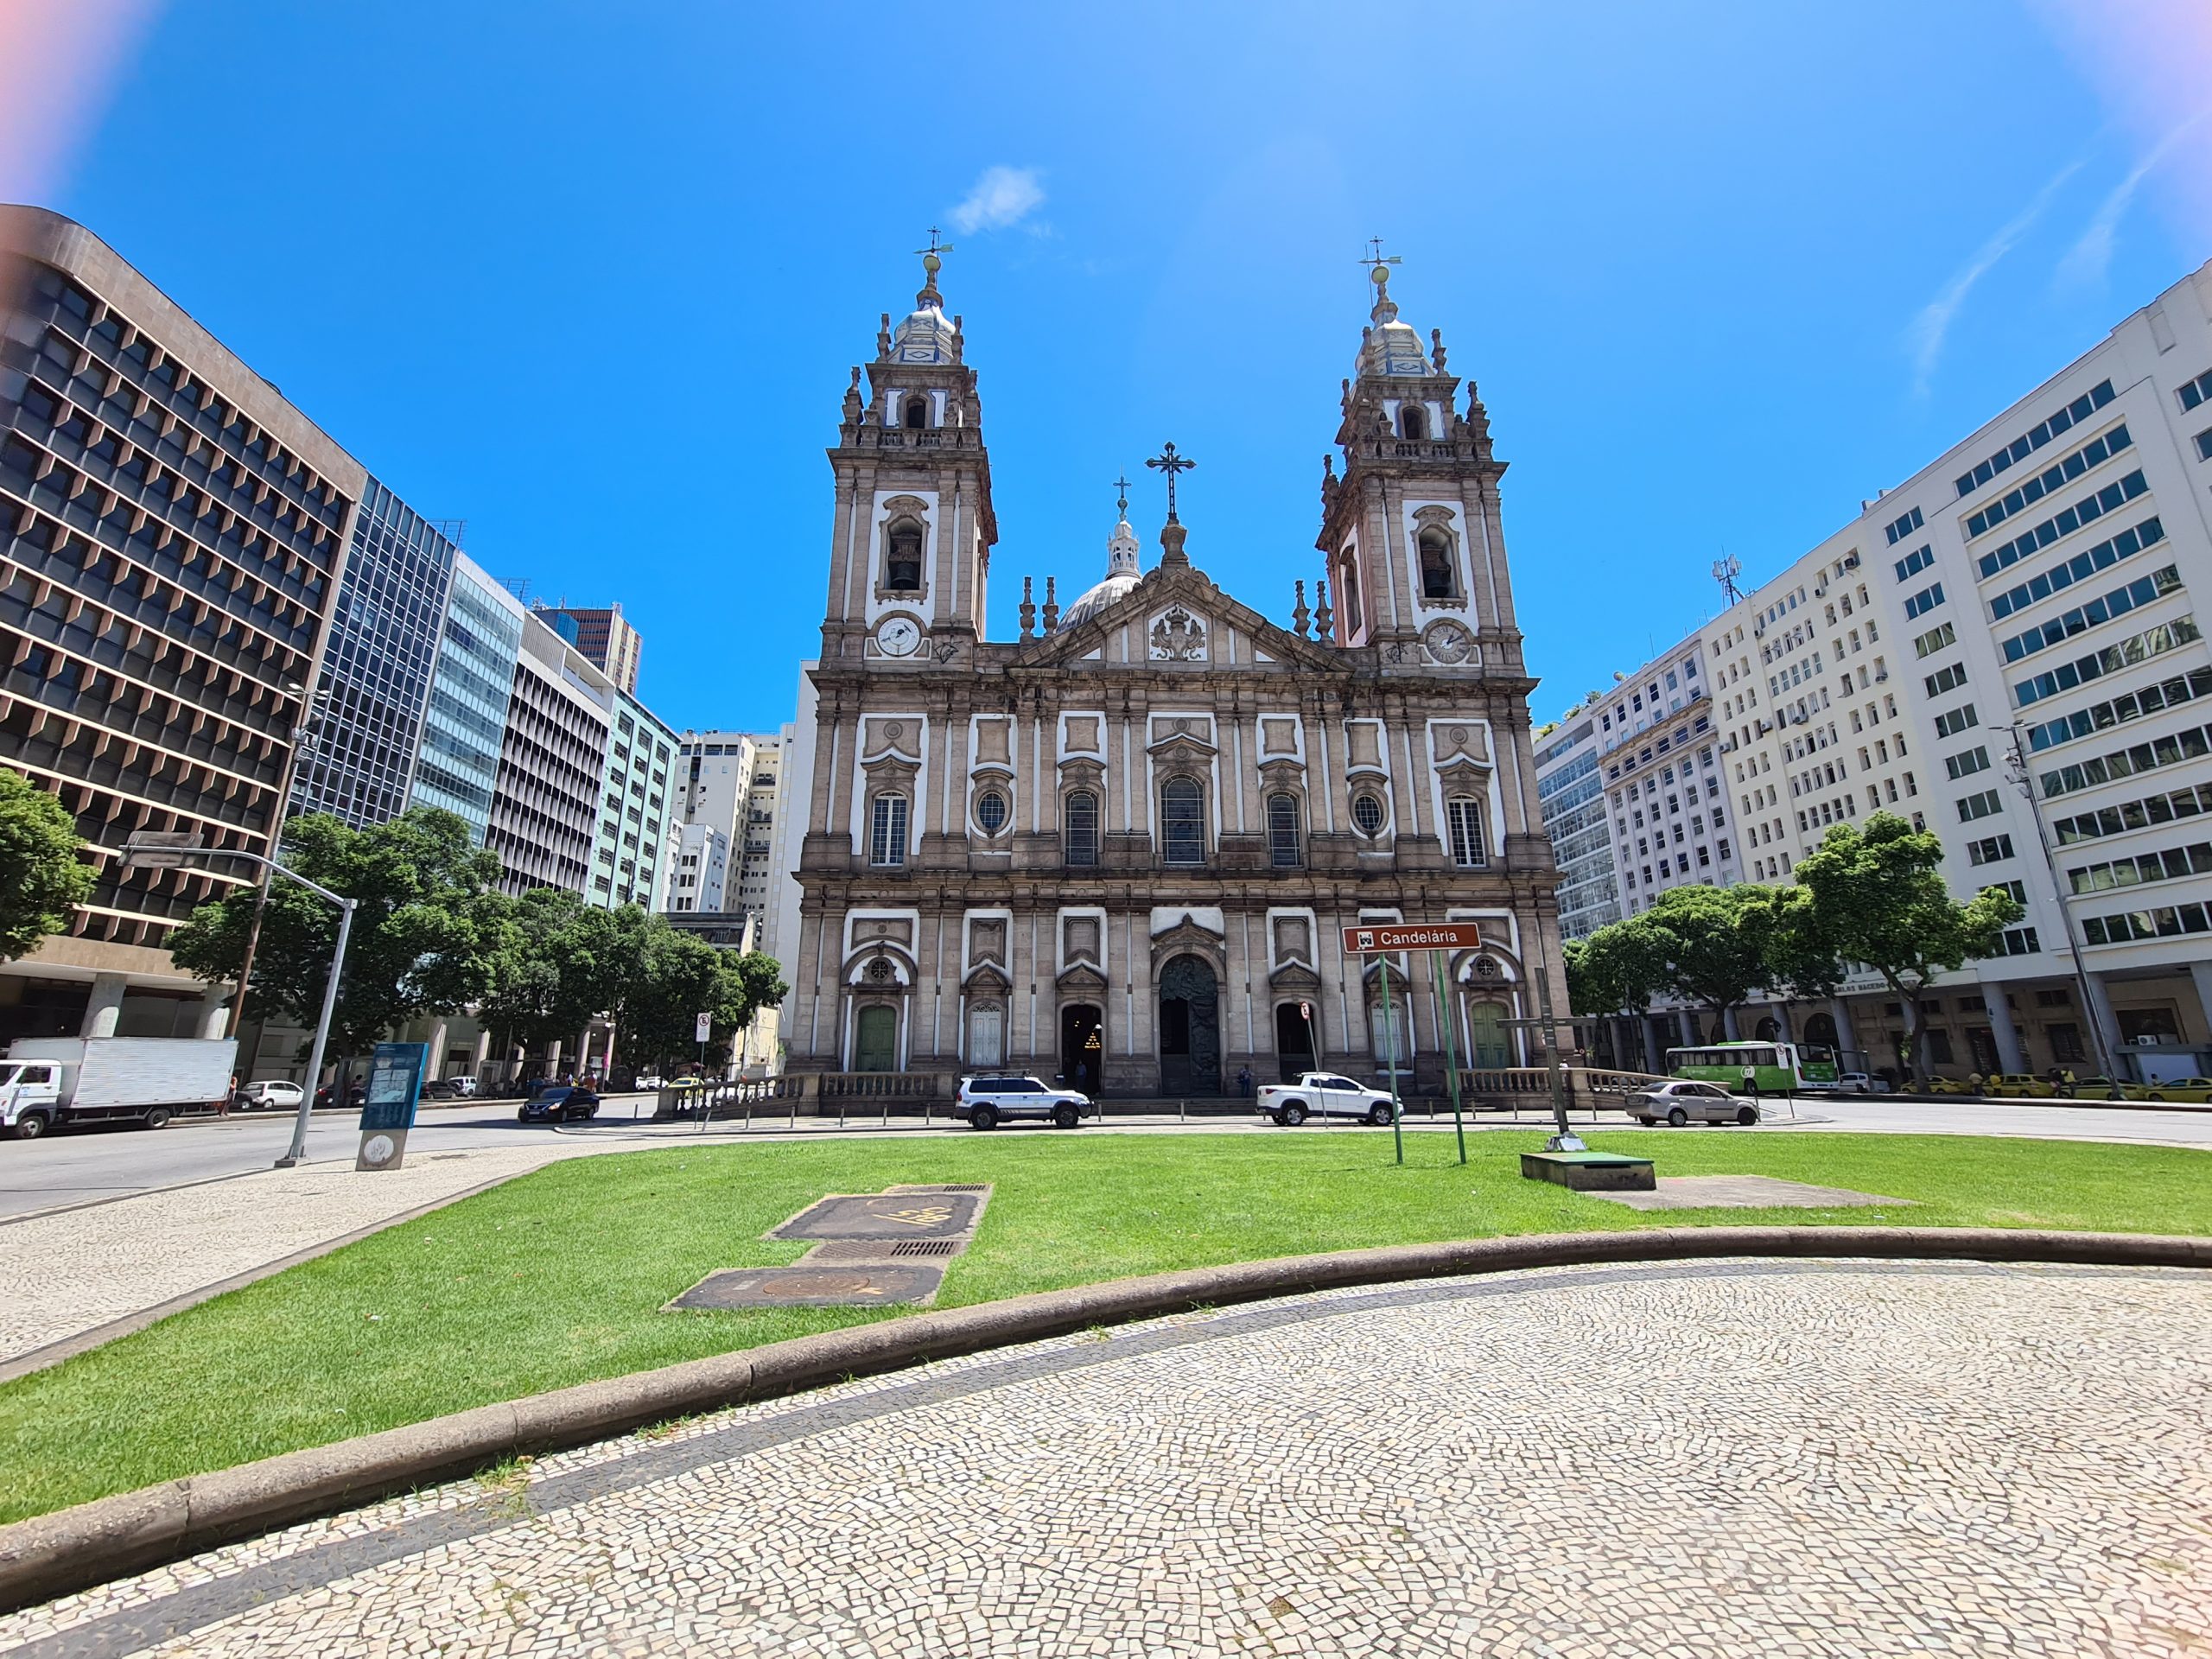 Igreja da Candelária no Rio de Janeiro